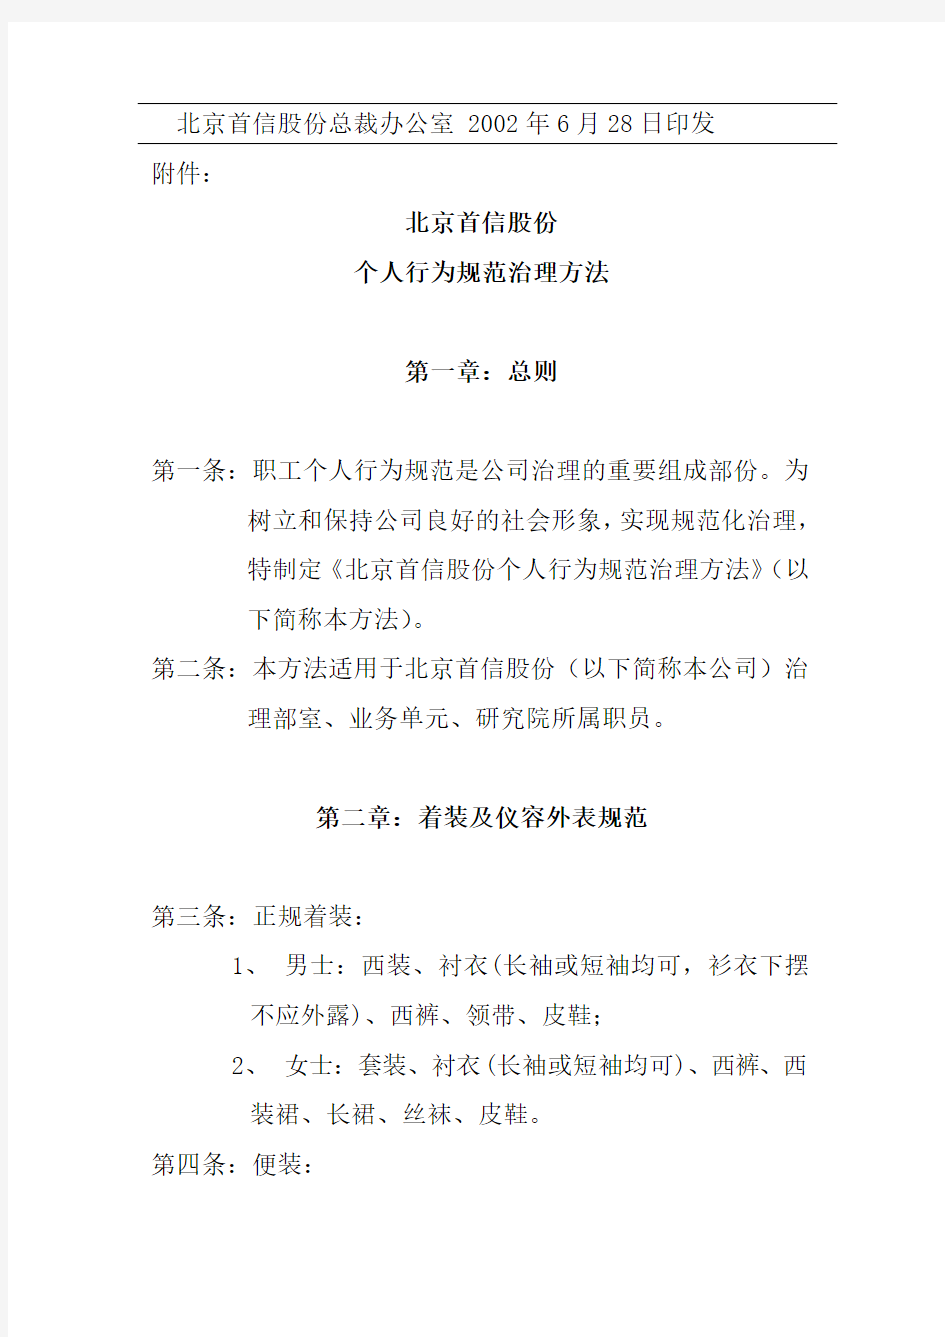 北京首信股份有限公司个人行为规范管理办法